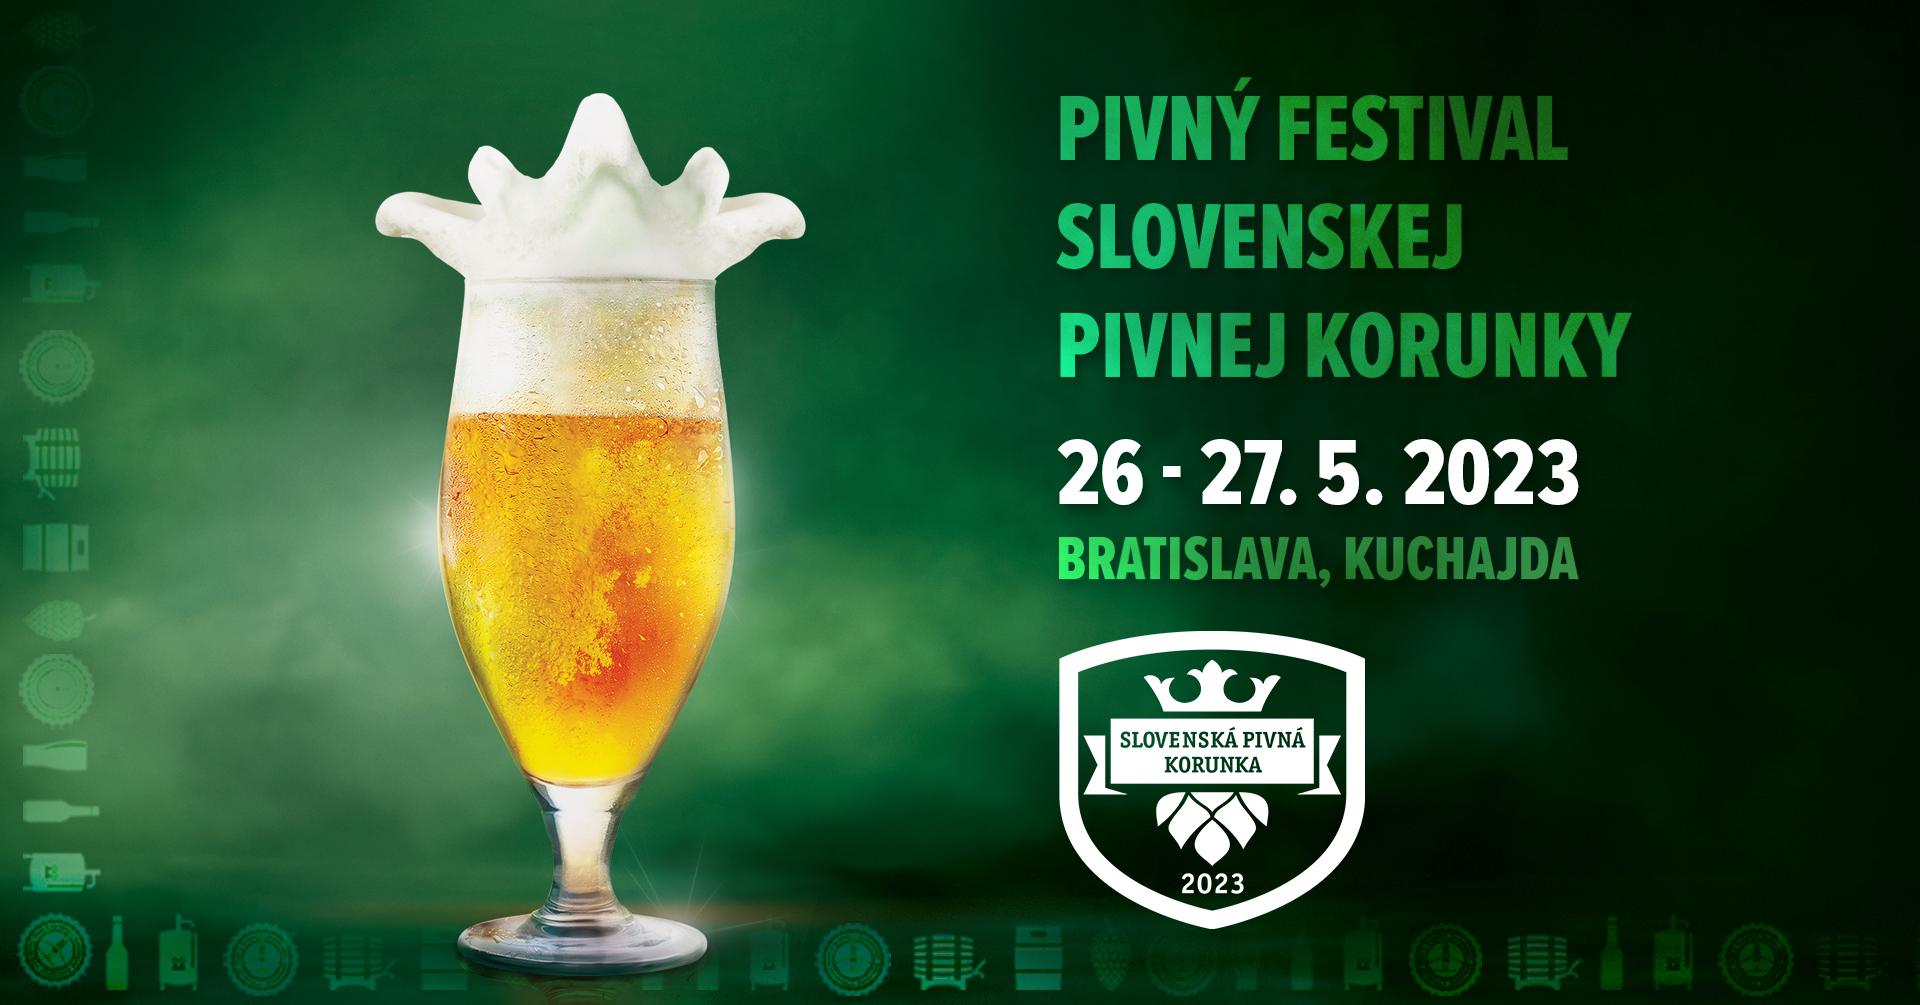 Pivný Festival Slovenskej Pivnej Korunky 2023 Bratislava